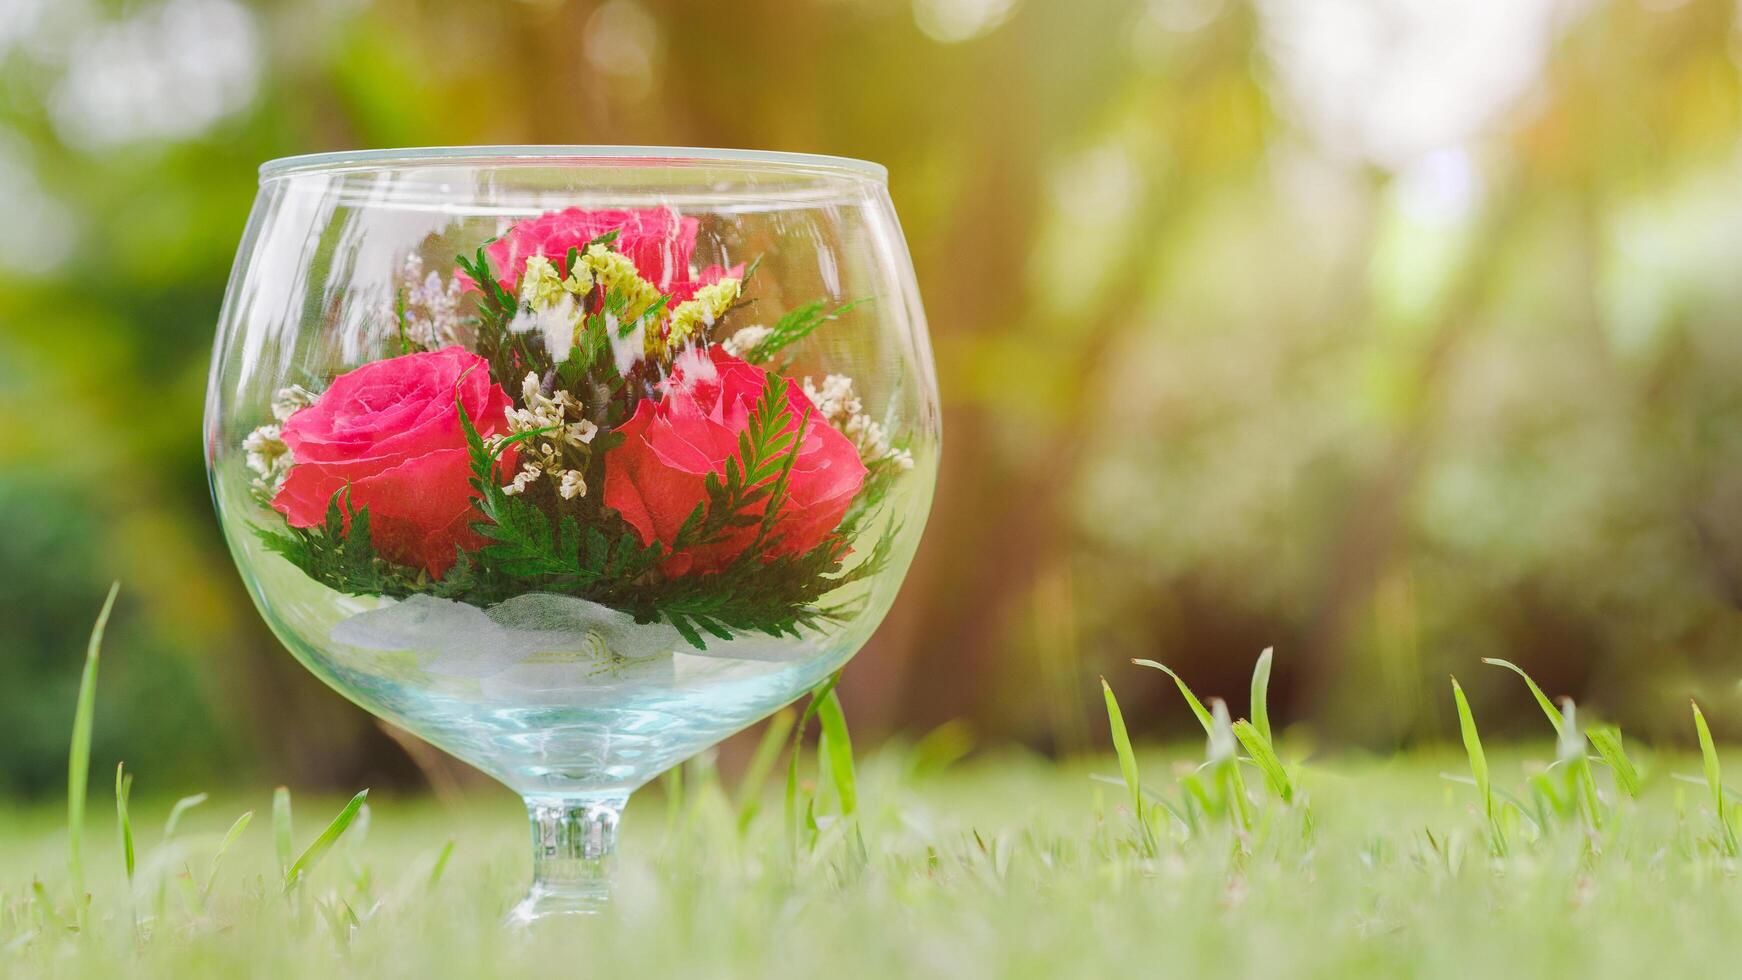 Las copas de vino de cristal son grandes, decoradas con una rosa